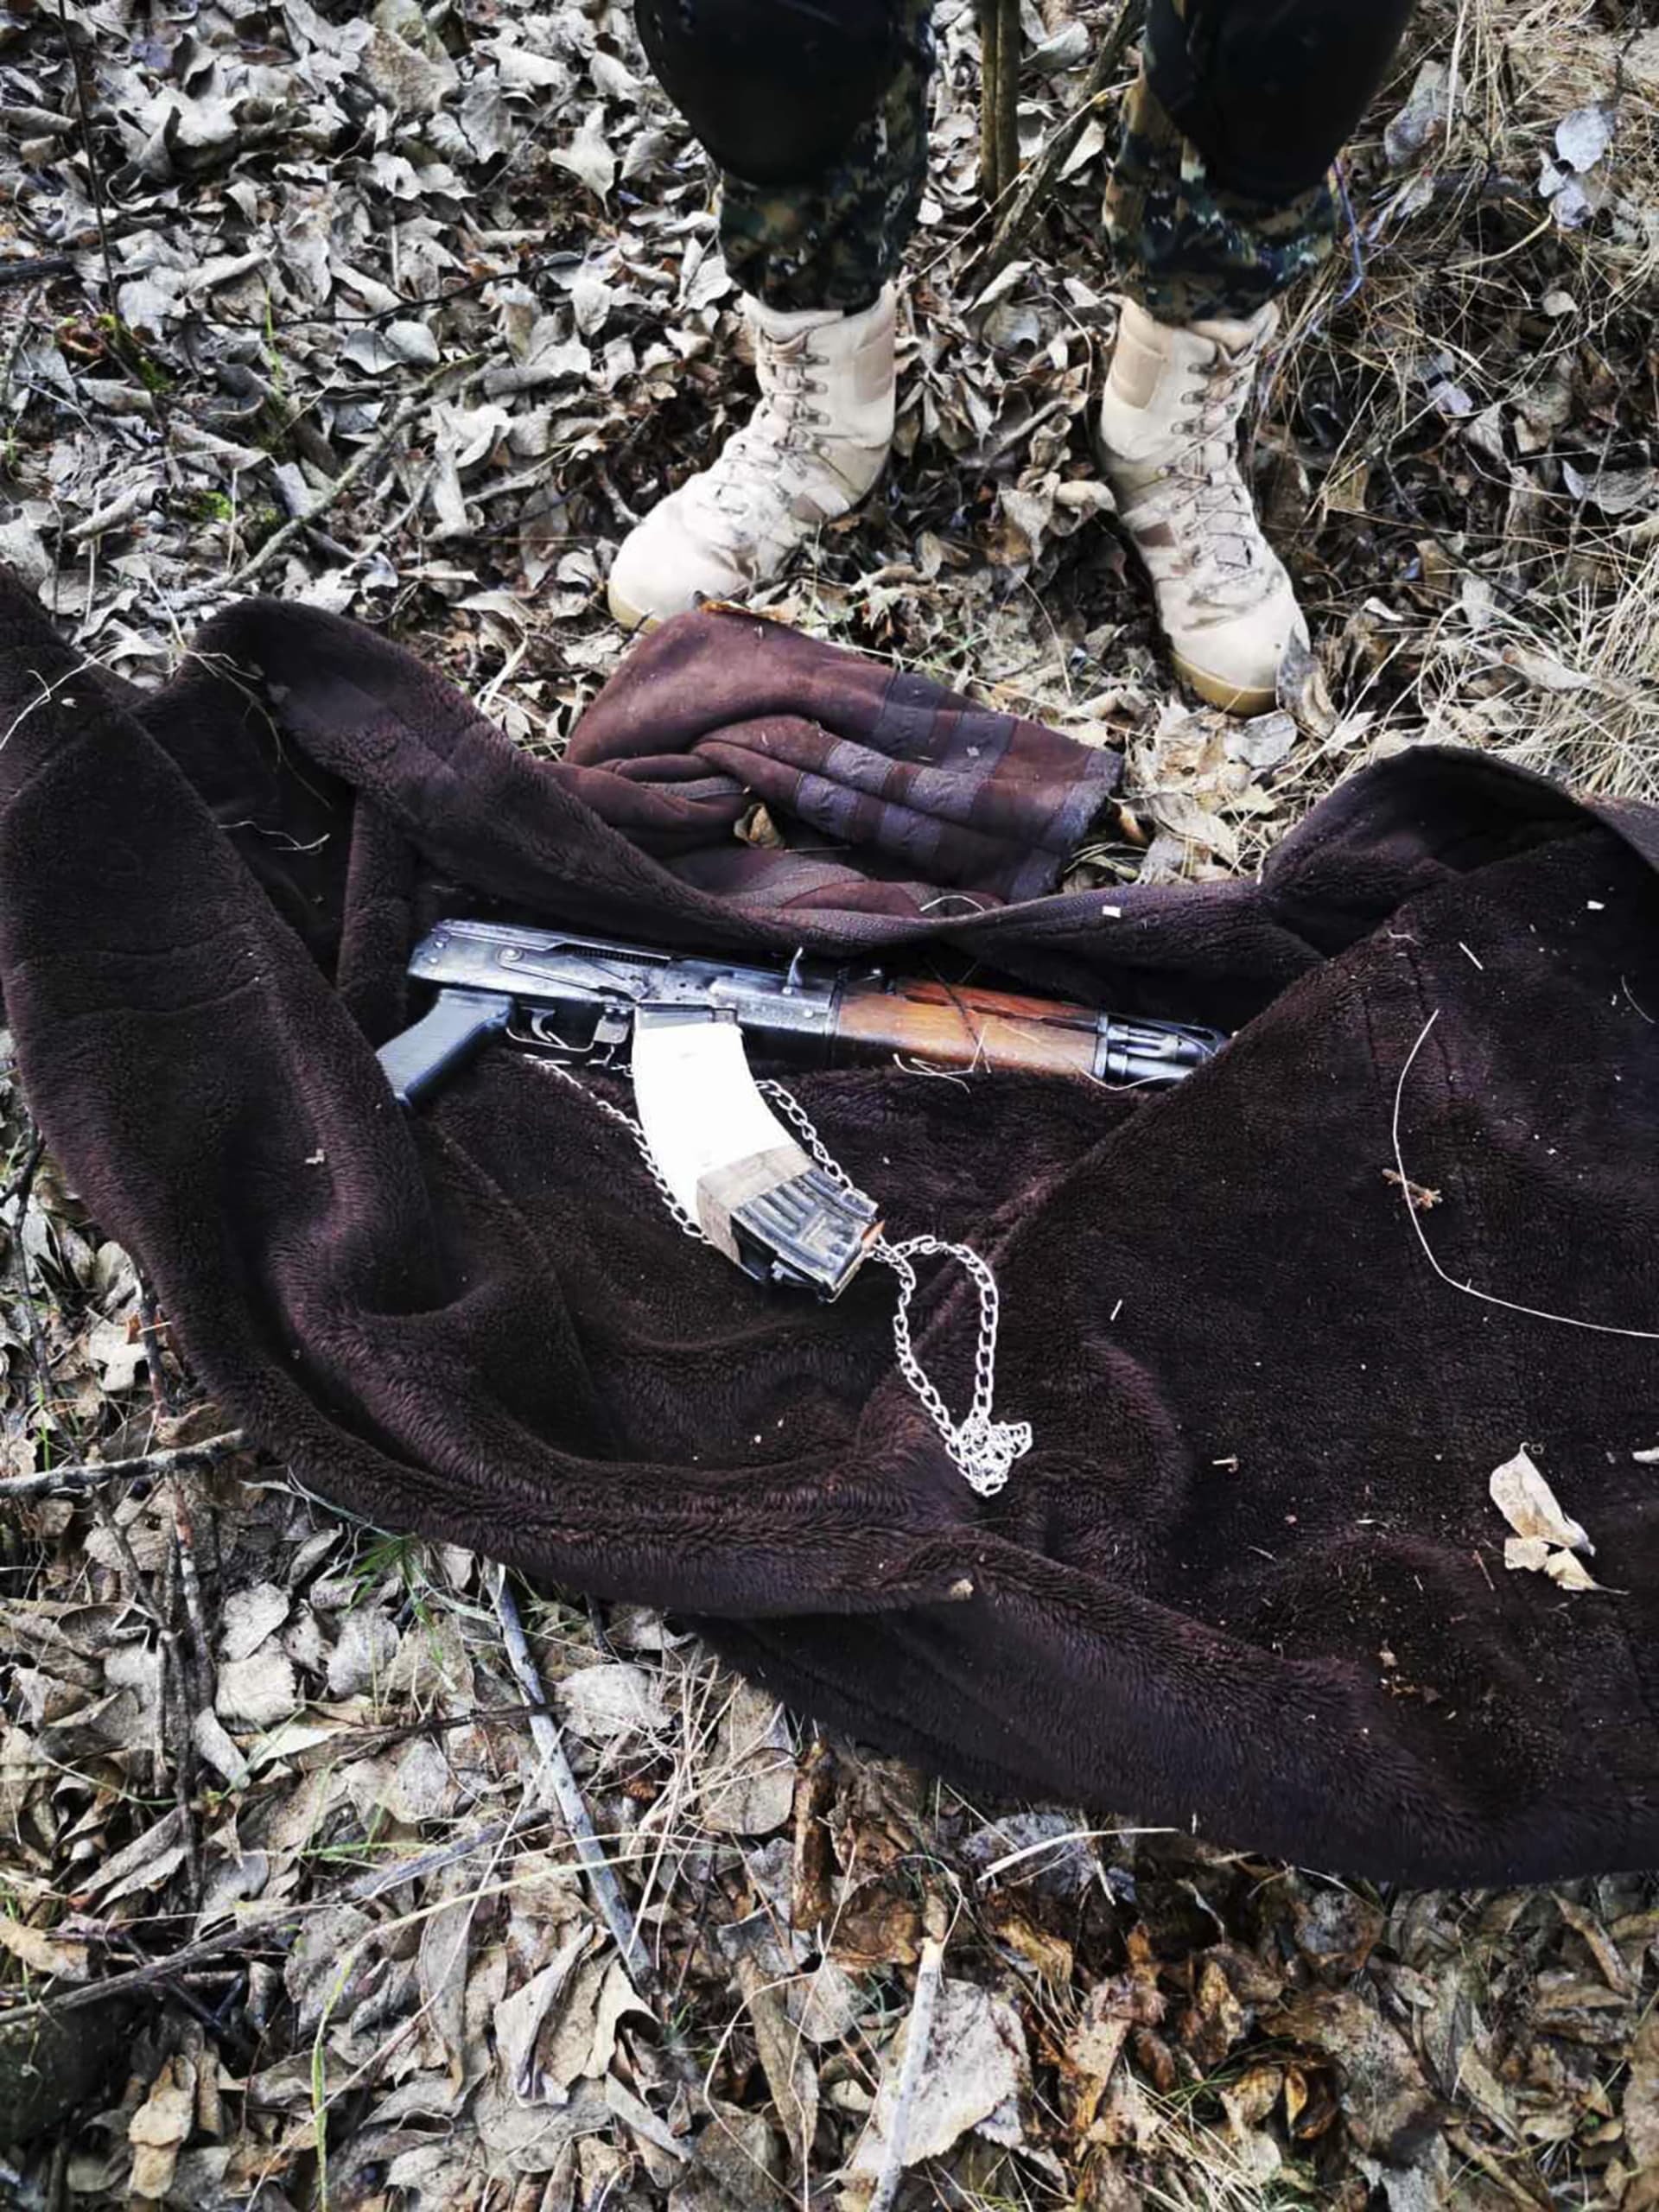 Zbraň zabavená srbskými policisty migrantům u hraničního přechodu Horgoš